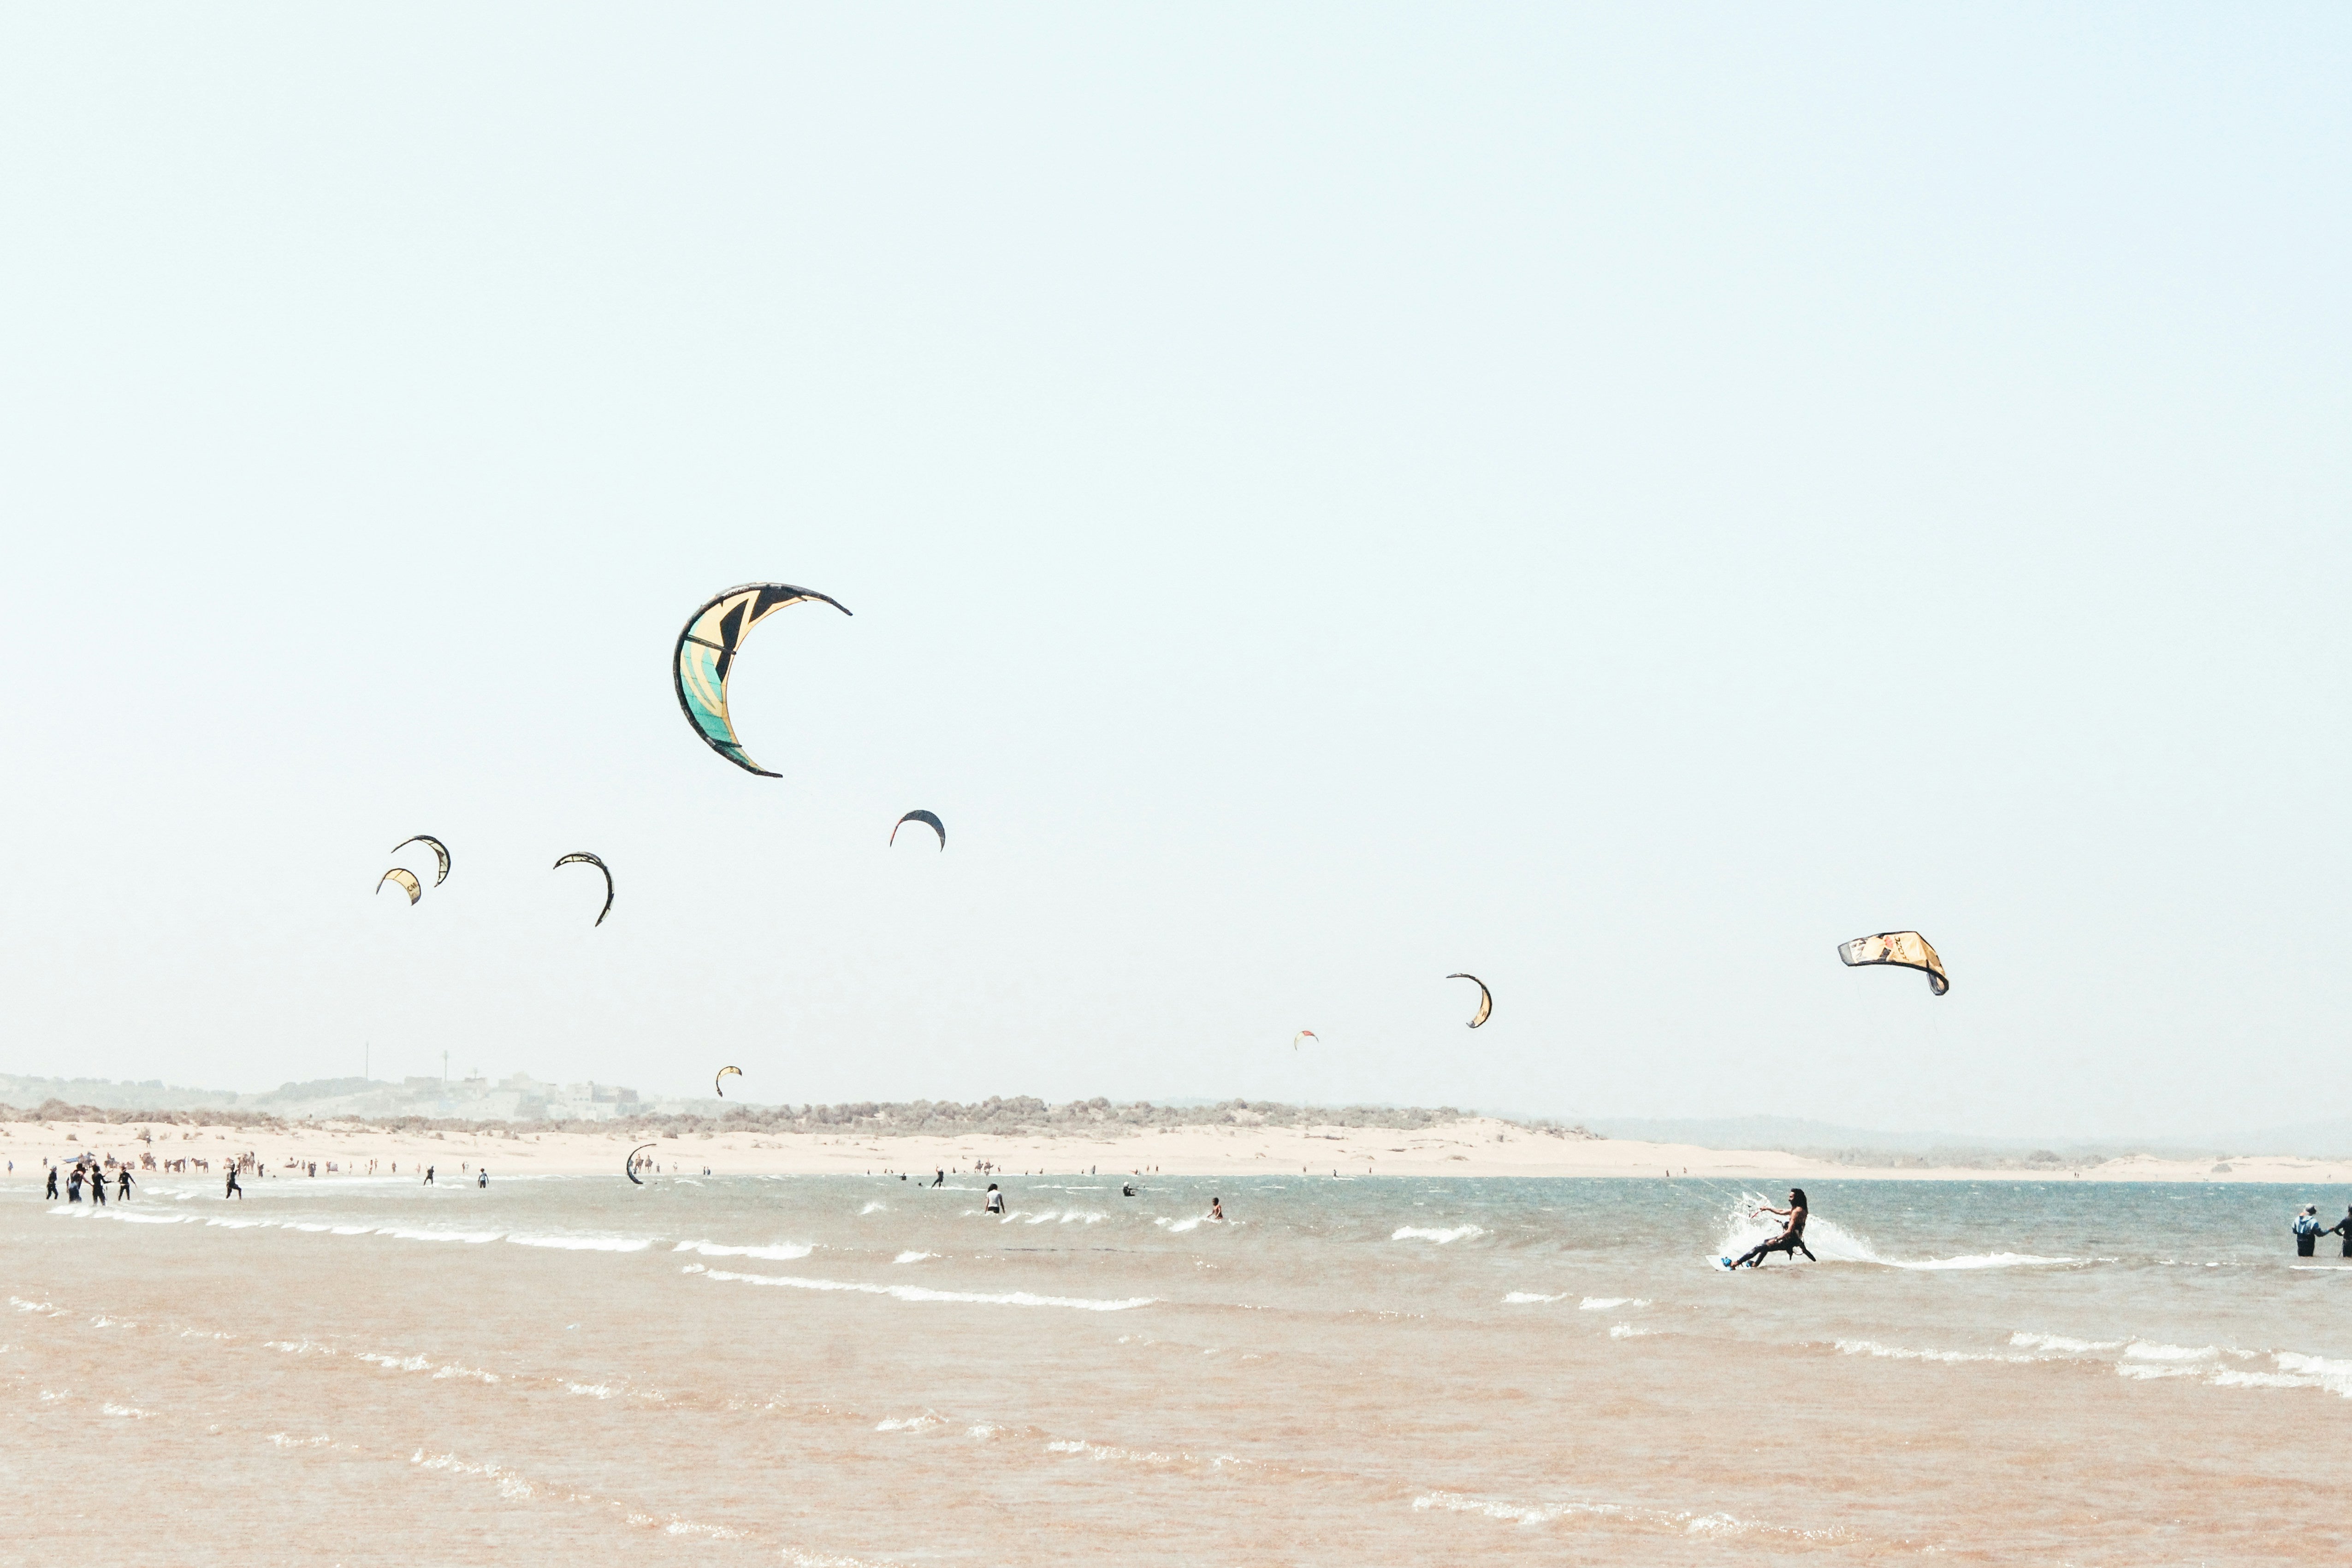 El spot perfecto para practicar kitesurf: condiciones ideales y mejores lugares